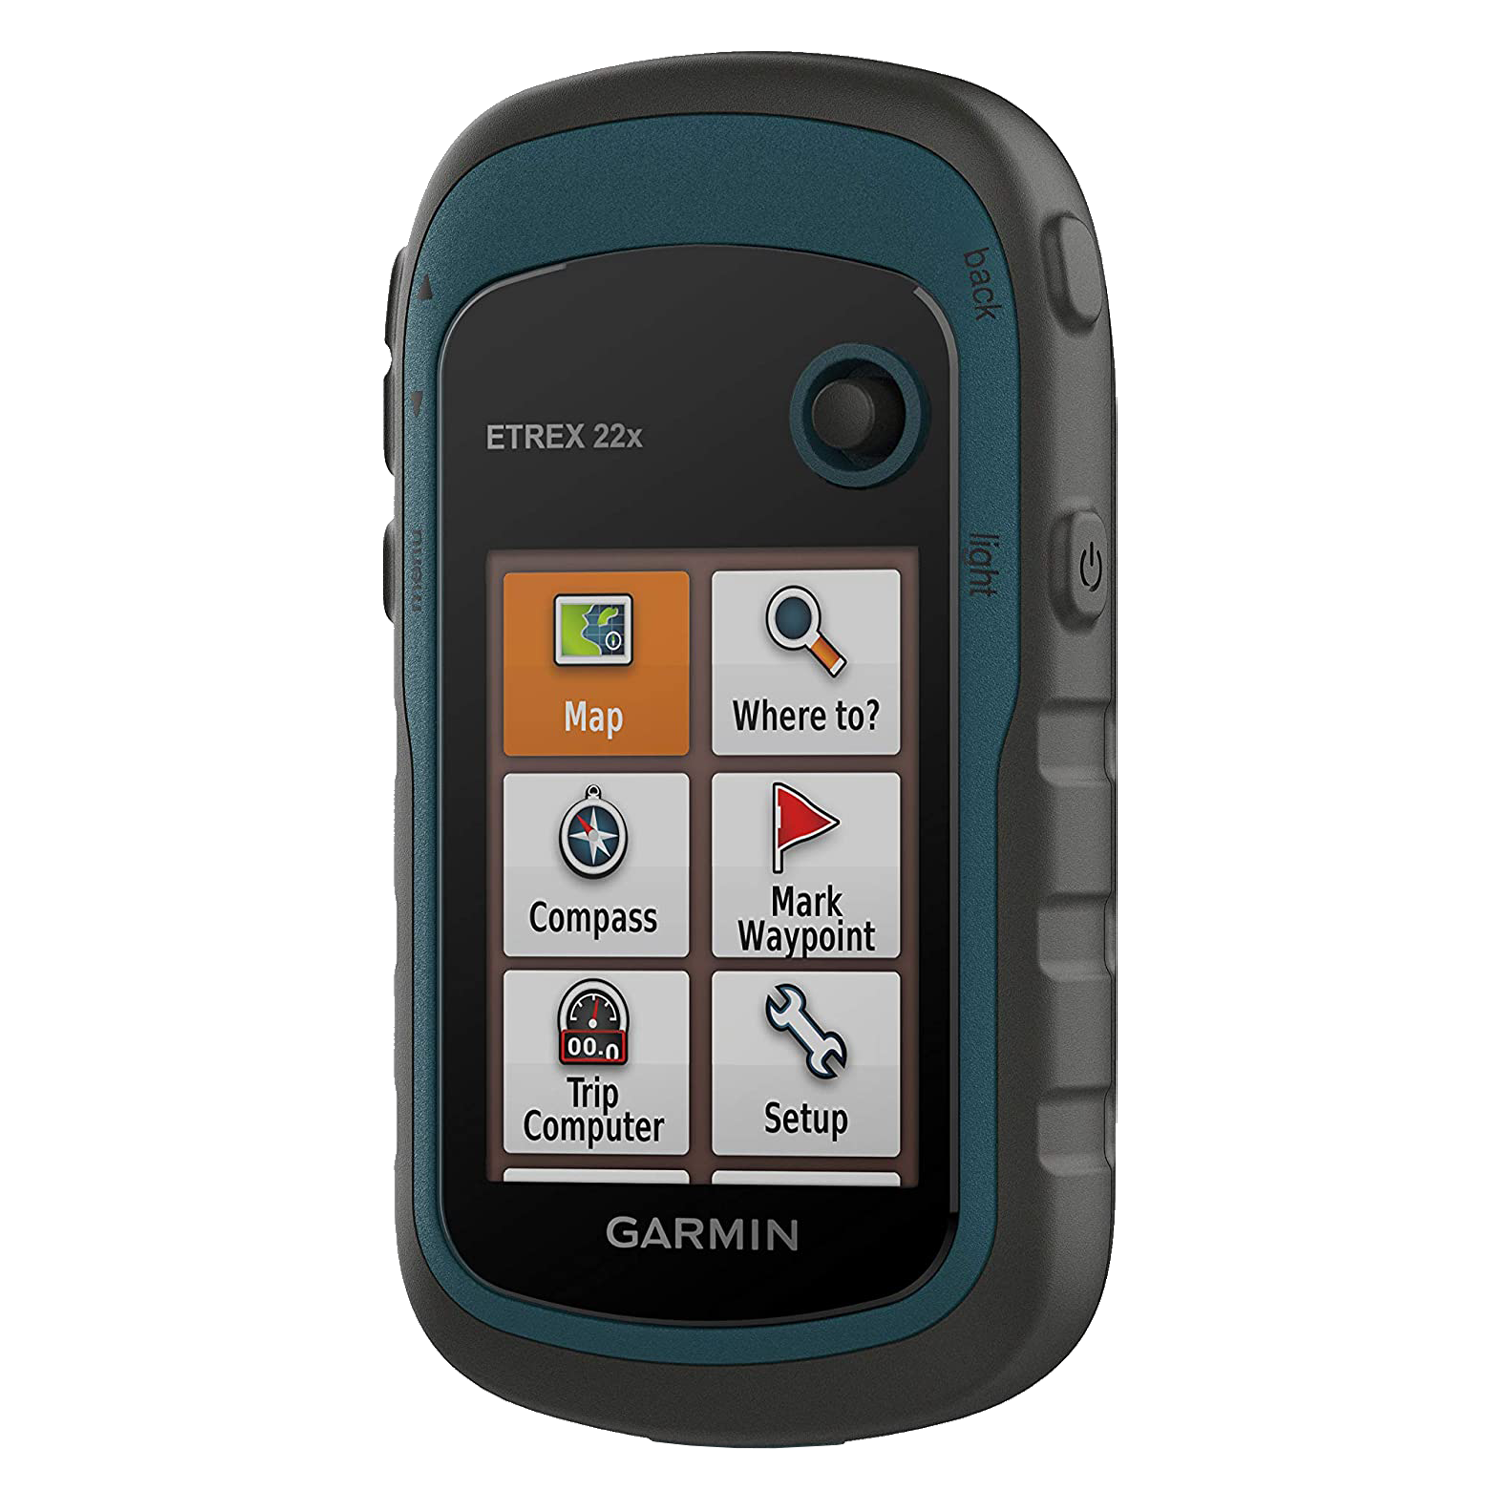 GPS Garmin Etrex 22X / Tela 2.2 / IPX7 / 8GB - Preto / Azul (010-02256-03)
